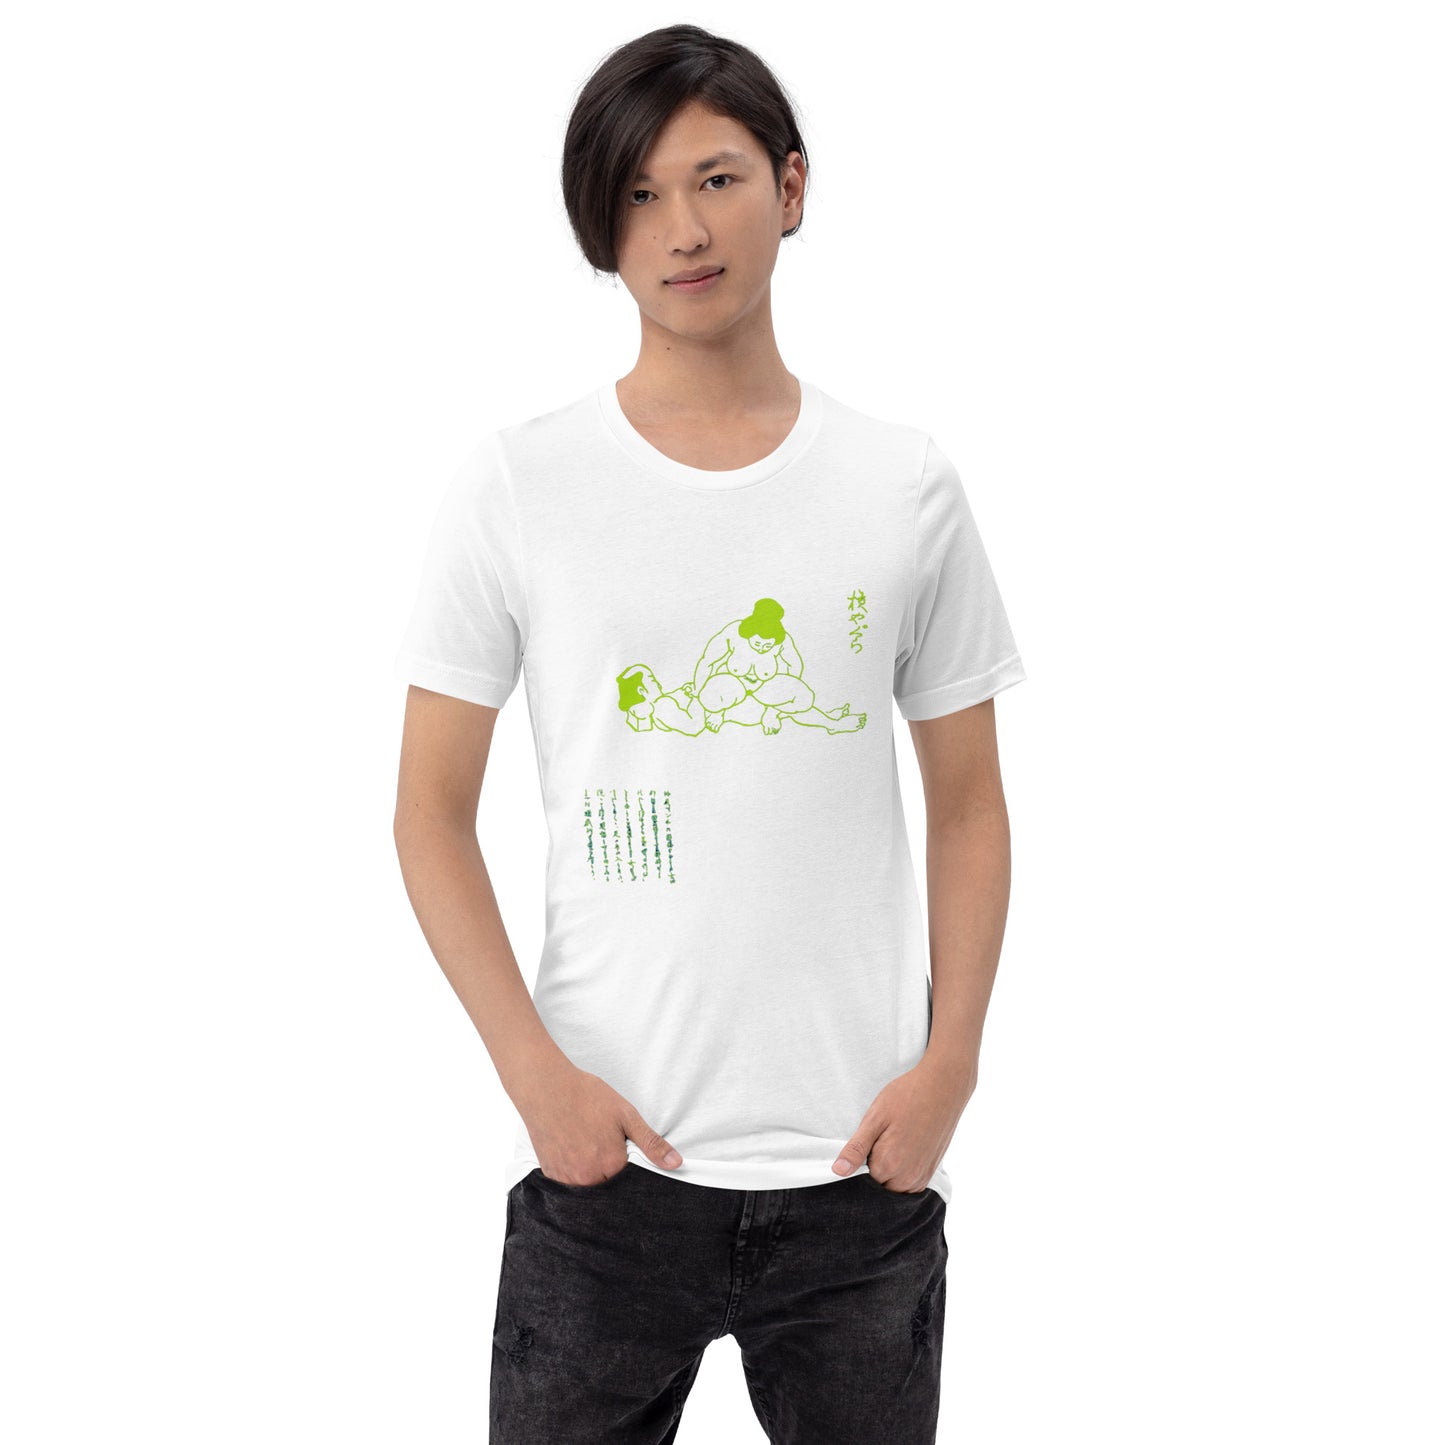 Unisex t-shirt "51 YOKO YAGURA" White